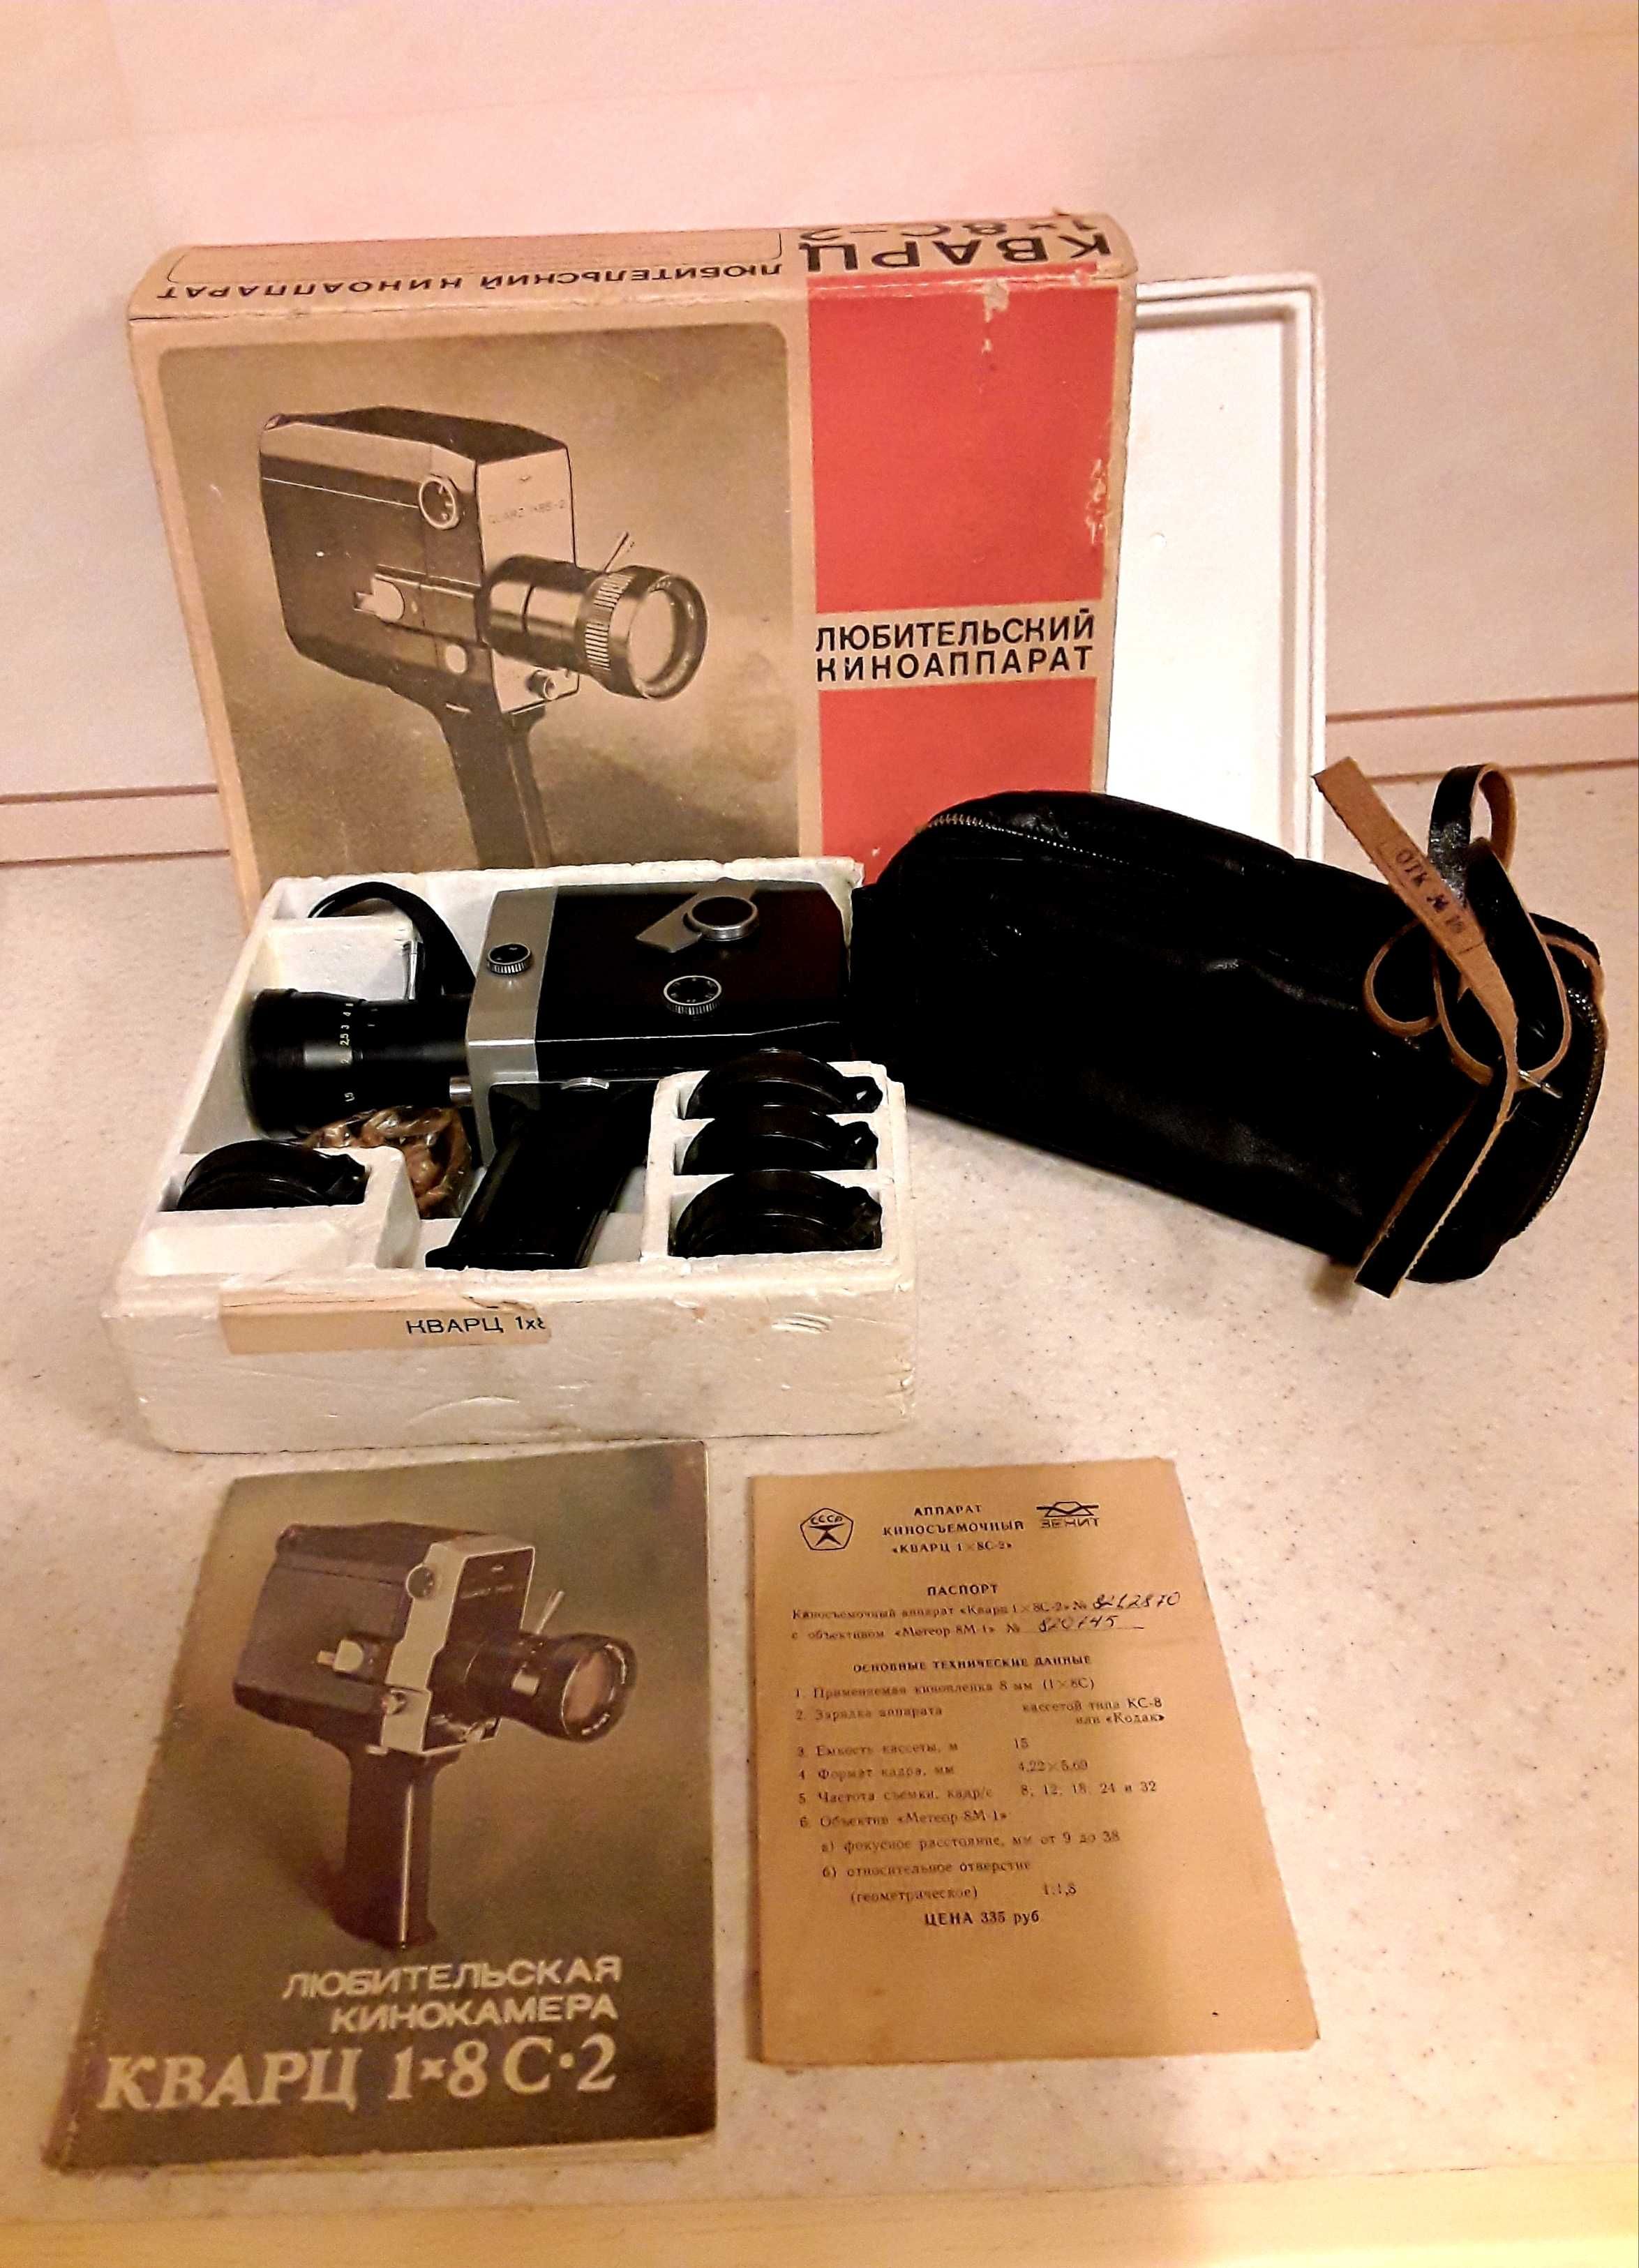 Производство СССР: Кинокамера "Кварц 1х8 С-2" и Кинопроектор "Волна-3"